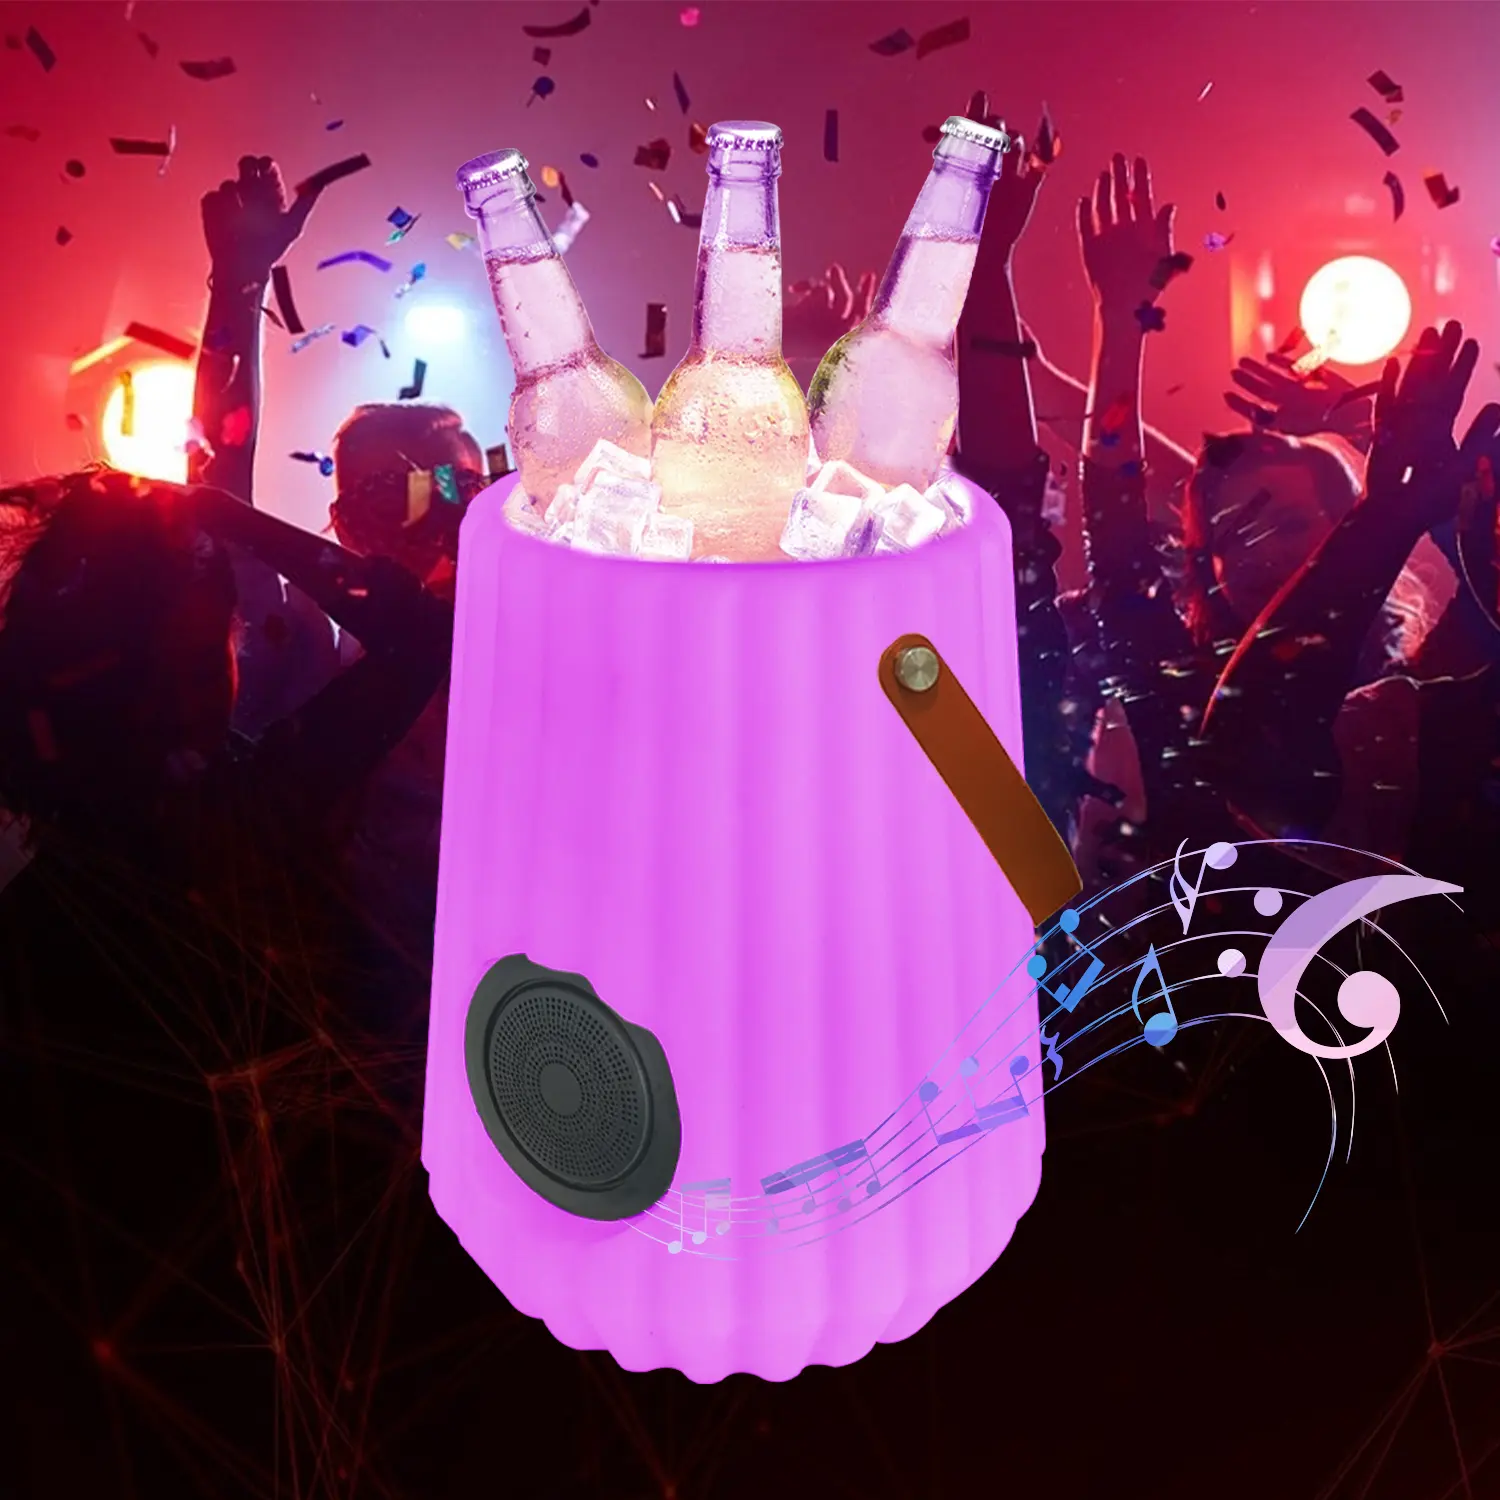 دلو ثلج بلاستيكي للملهى الليلي للحفلات به وعاء مشروب للخمر والبيرة مع إضاءة ليد